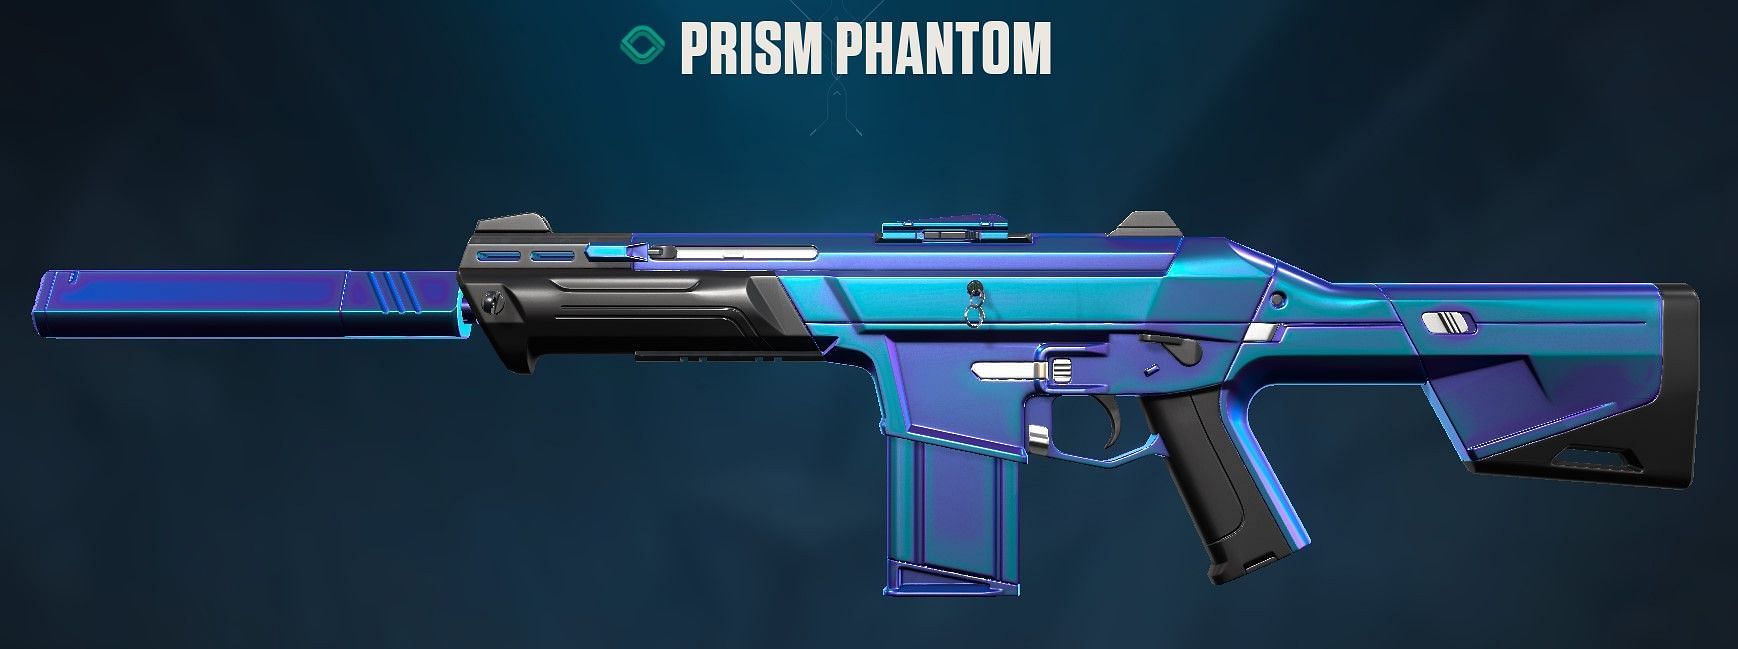 Prism Phantom (Image via Riot Games)